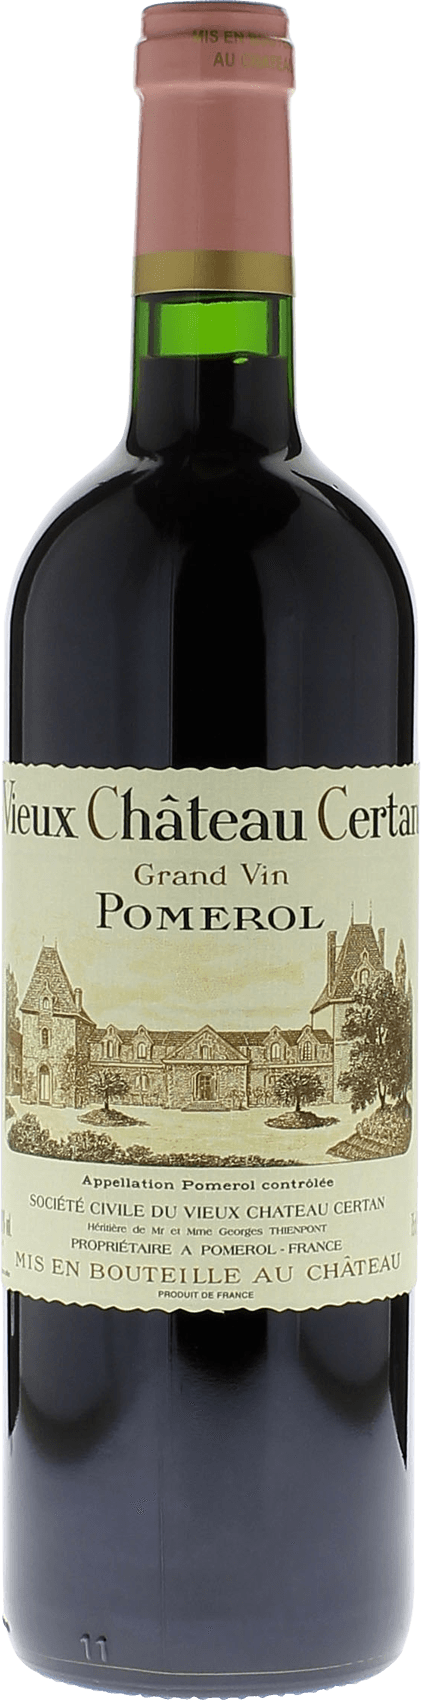 Vieux chteau  certan 1979  Pomerol, Bordeaux rouge